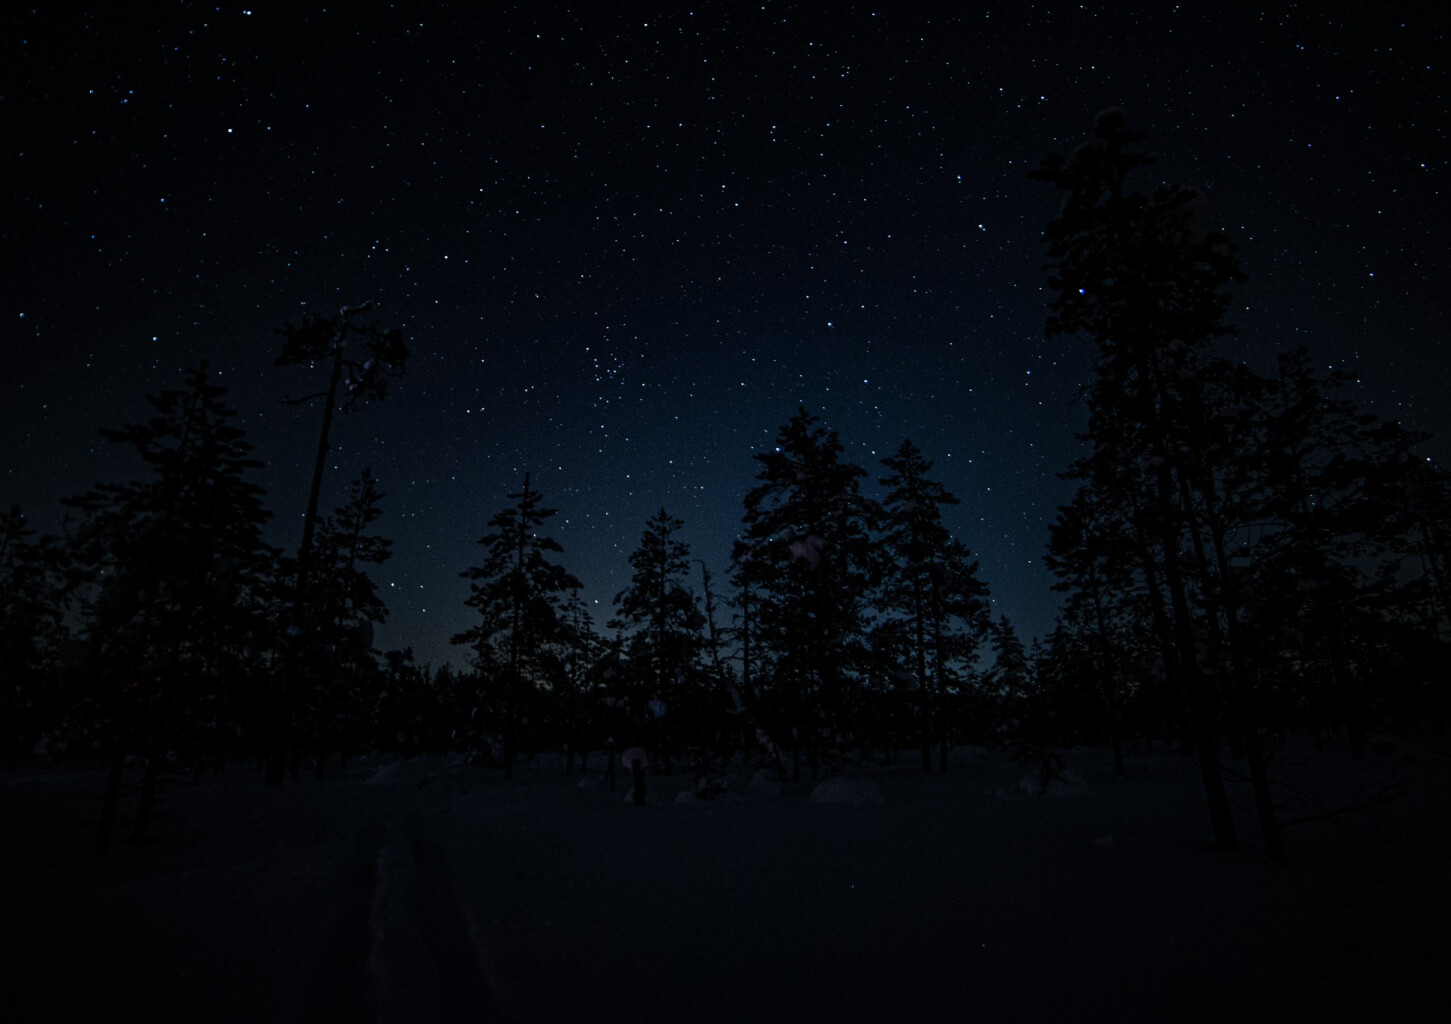 Tähtivalokuvausta Valkmusan kansallispuistossa kolmelle